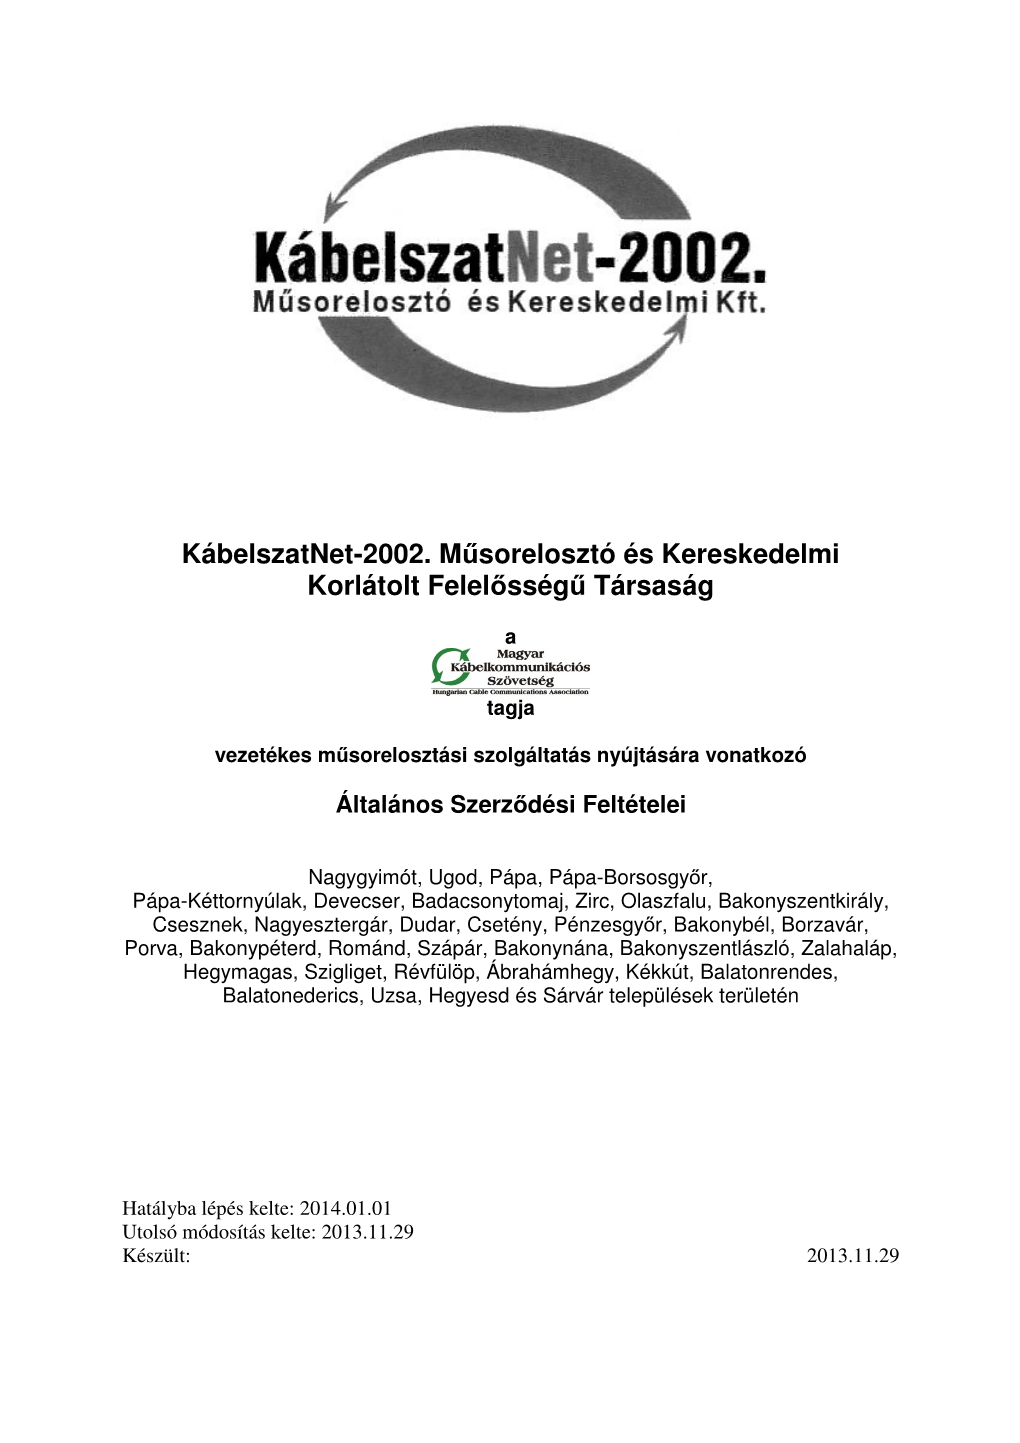 Kábelszatnet-2002. Műsorelosztó És Kereskedelmi Korlátolt Felelősségű